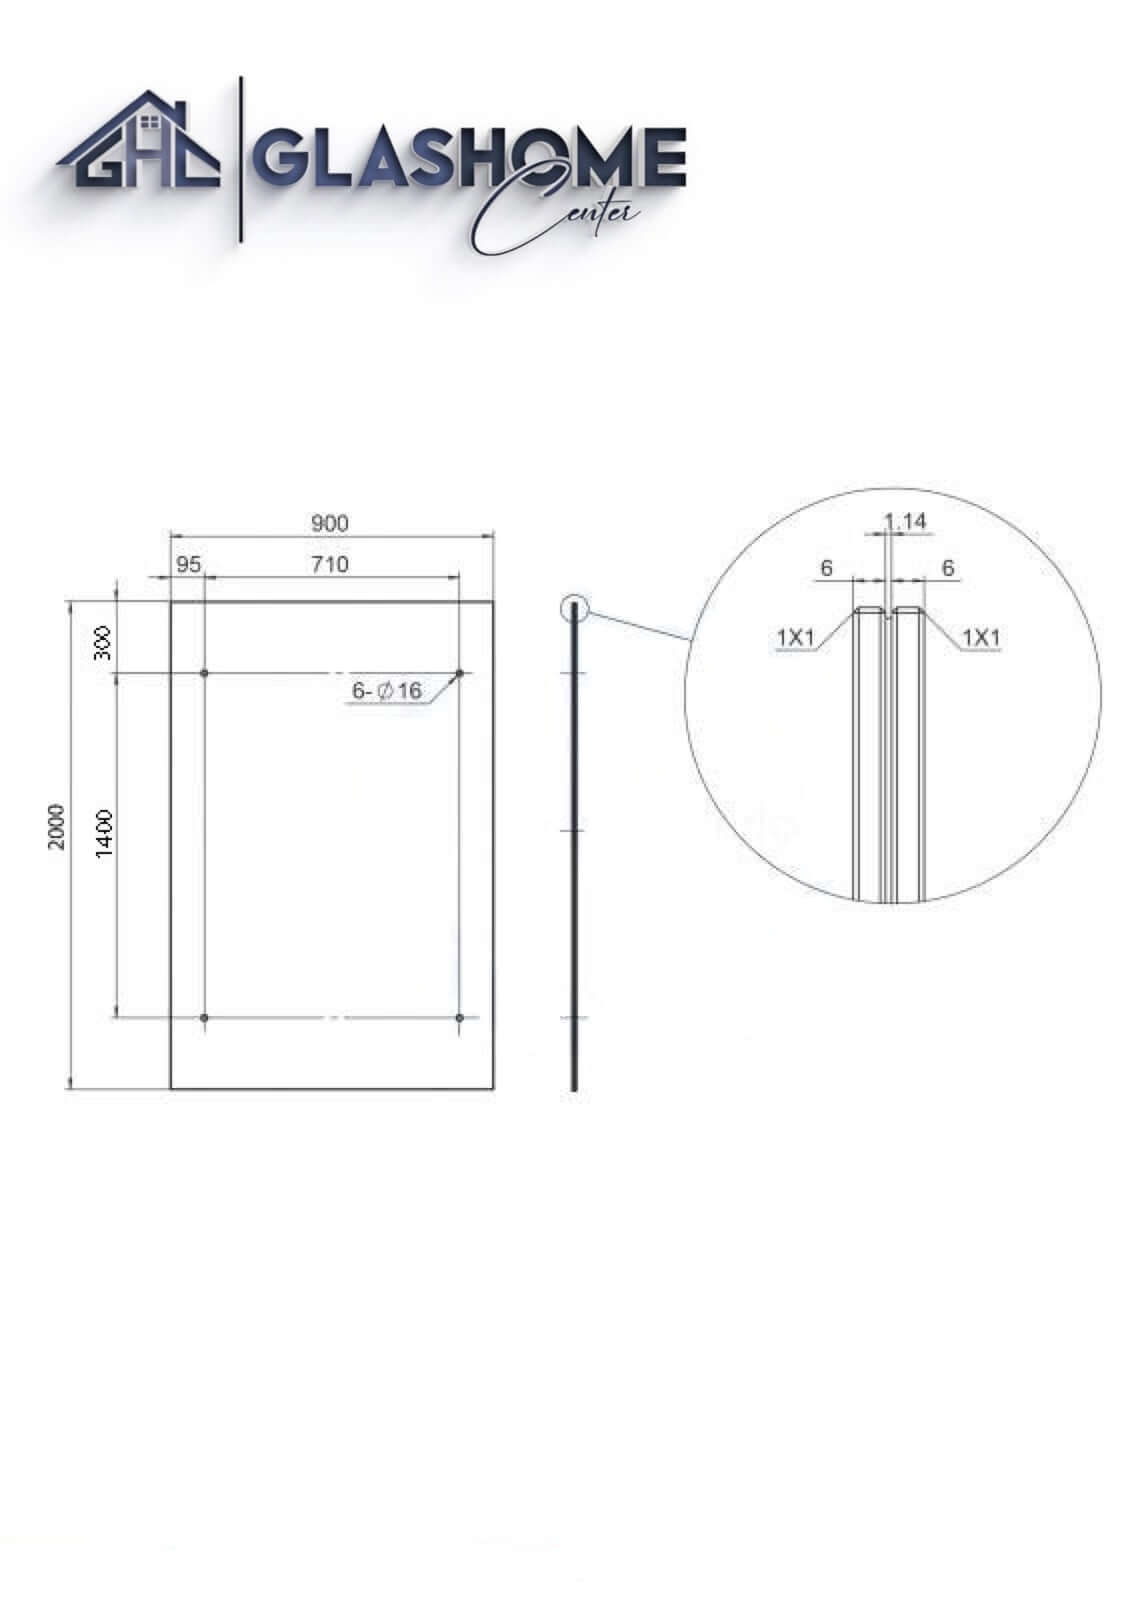 GlasHomeCenter - Glasvordach - Grauglas - 200x90cm - 13.1mm VSG - inkl. 2 Edelstahlhalterungen Variante "Athen"